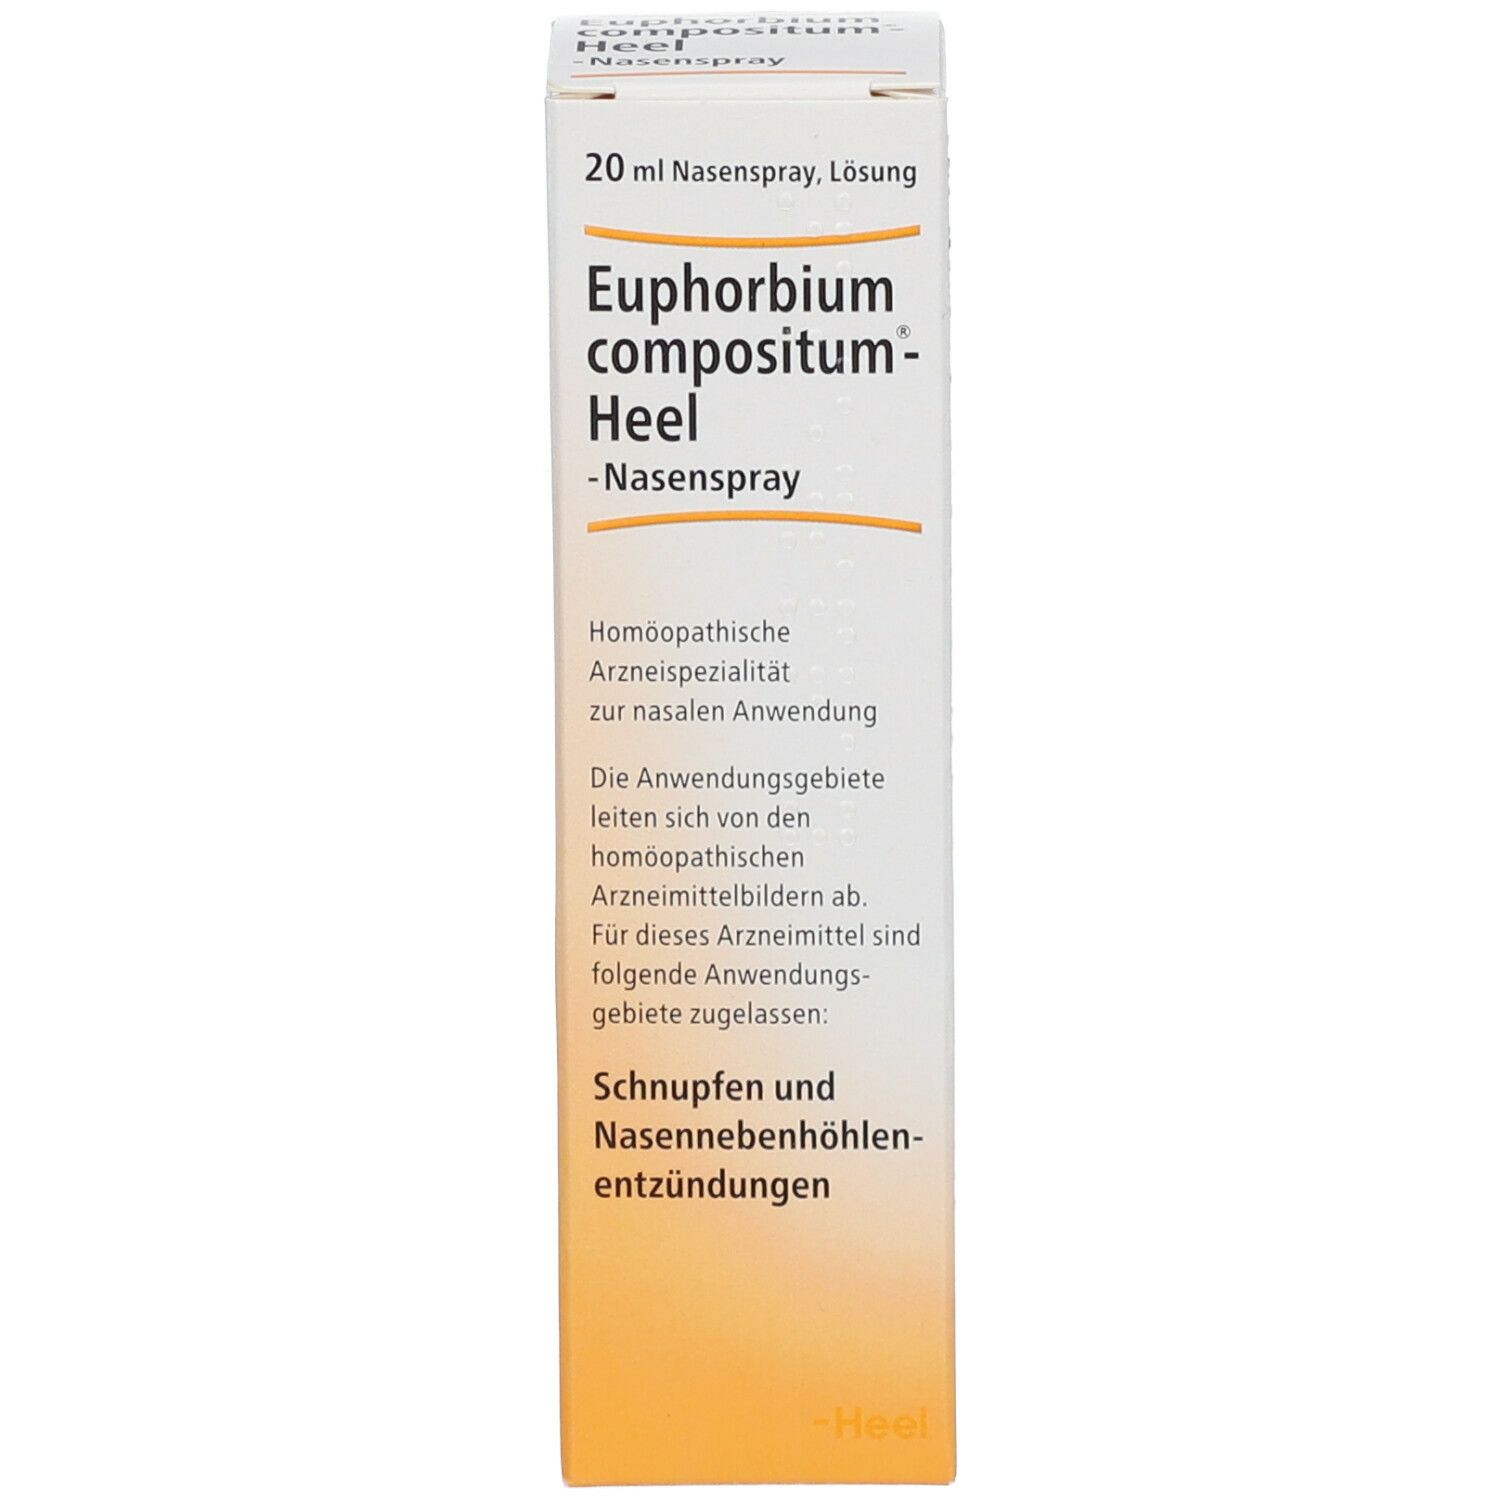 Euphorbium compositum-Heel® Nasenspray